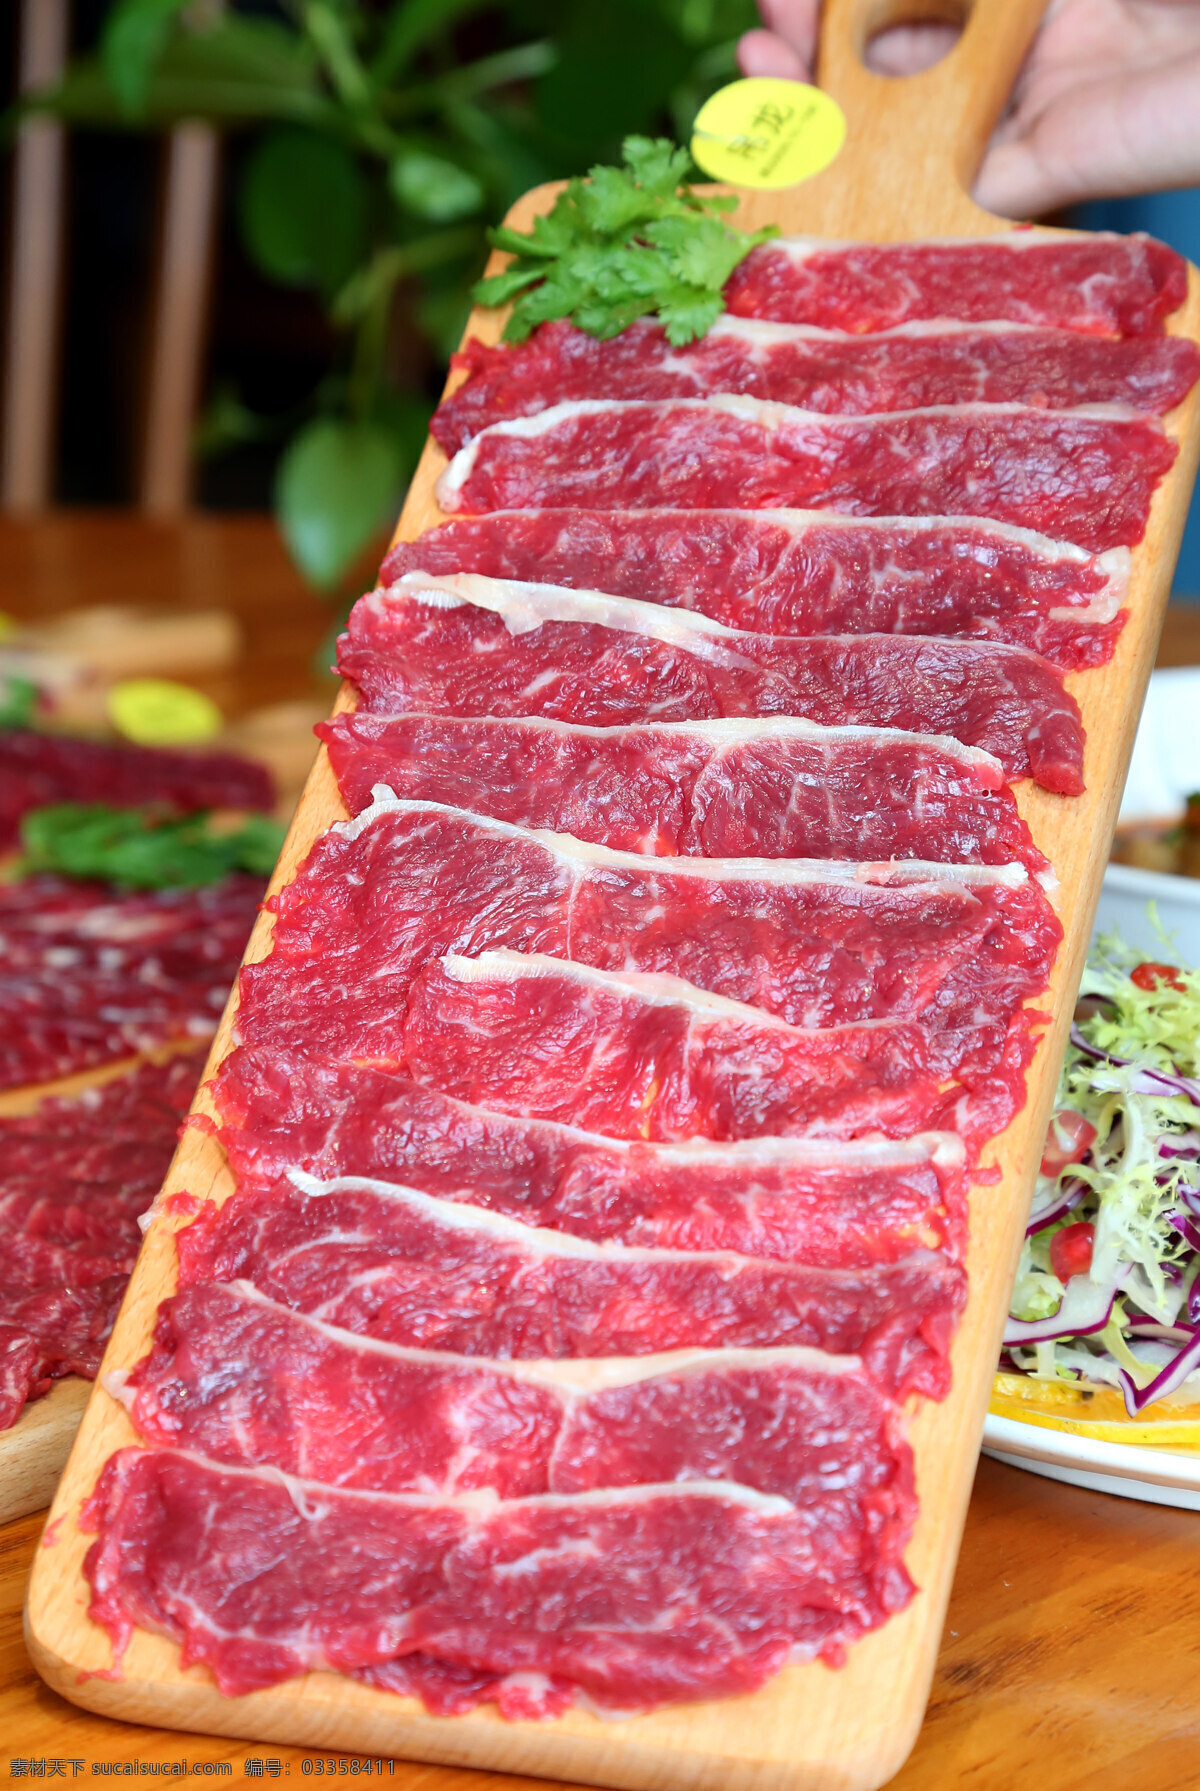 潮汕牛肉 鲜切牛肉 新鲜牛肉 新鲜鲜牛肉 生切牛肉 餐饮美食 传统美食